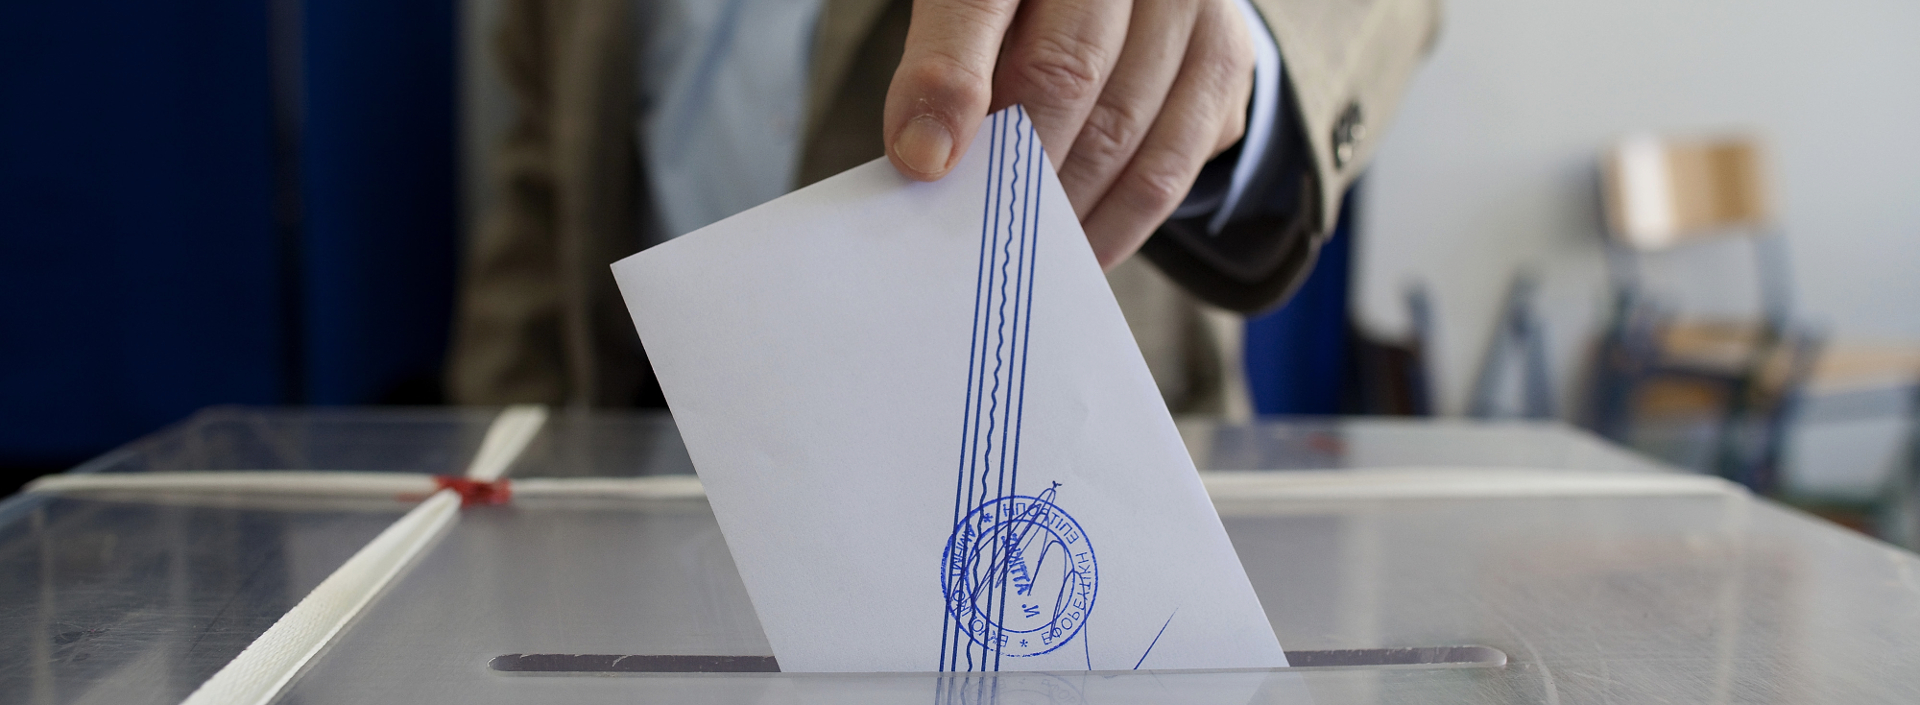 Ευρωεκλογές: Διψήφια η διαφορά ΝΔ-ΣΥΡΙΖΑ – Αναπόφευκτο το σενάριο των τριπλών εκλογών